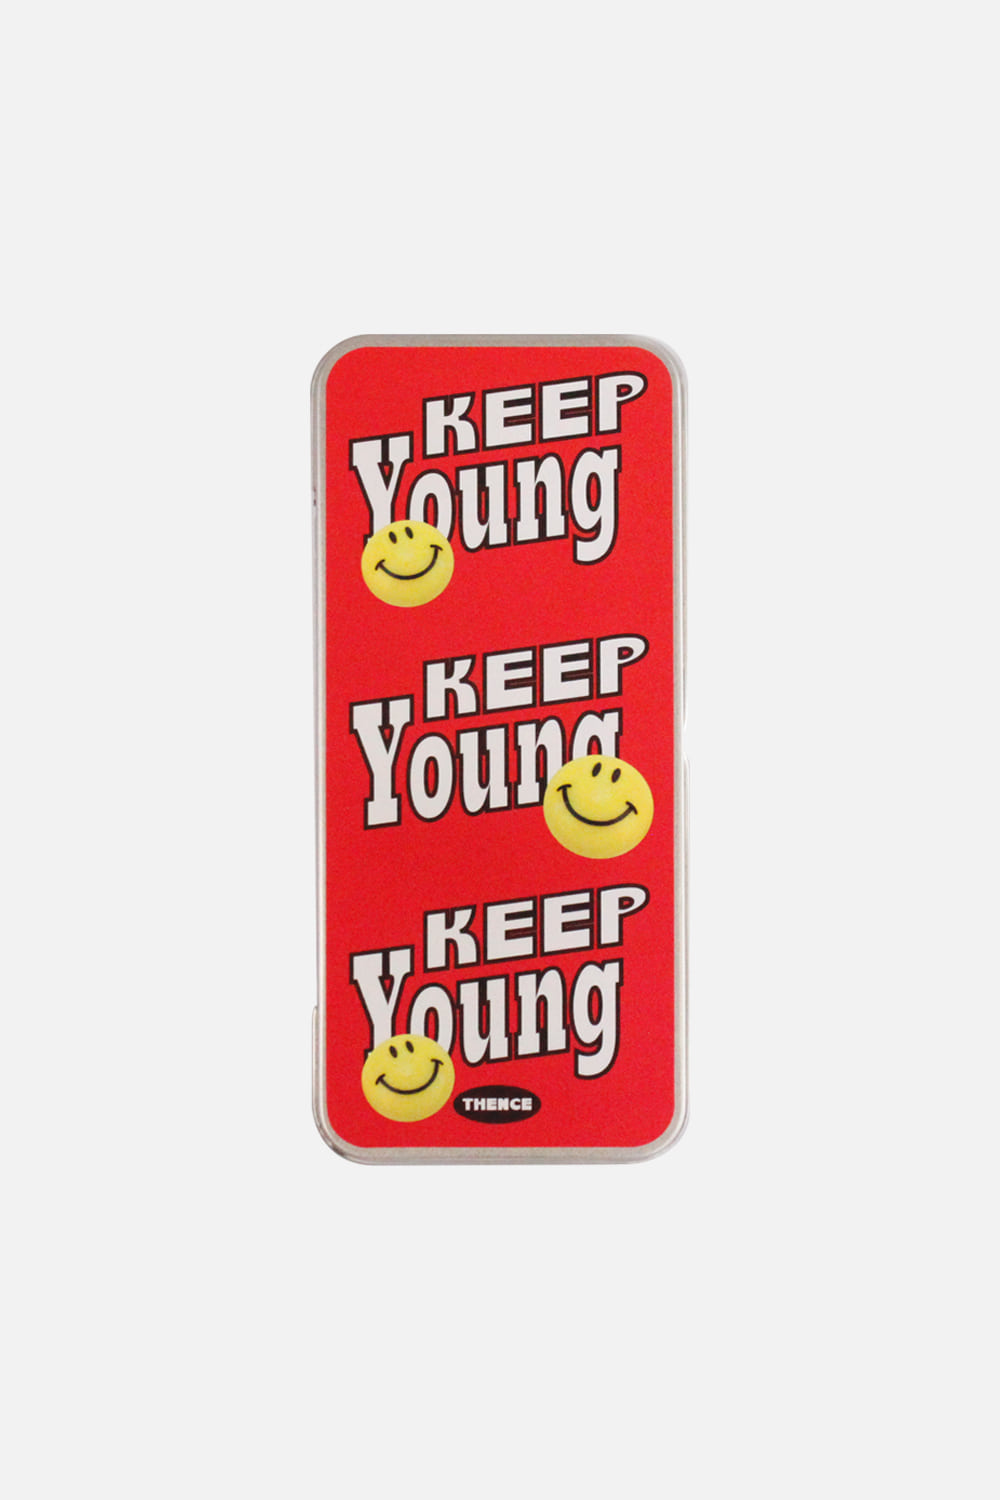 Tin Case Long_Keep Young